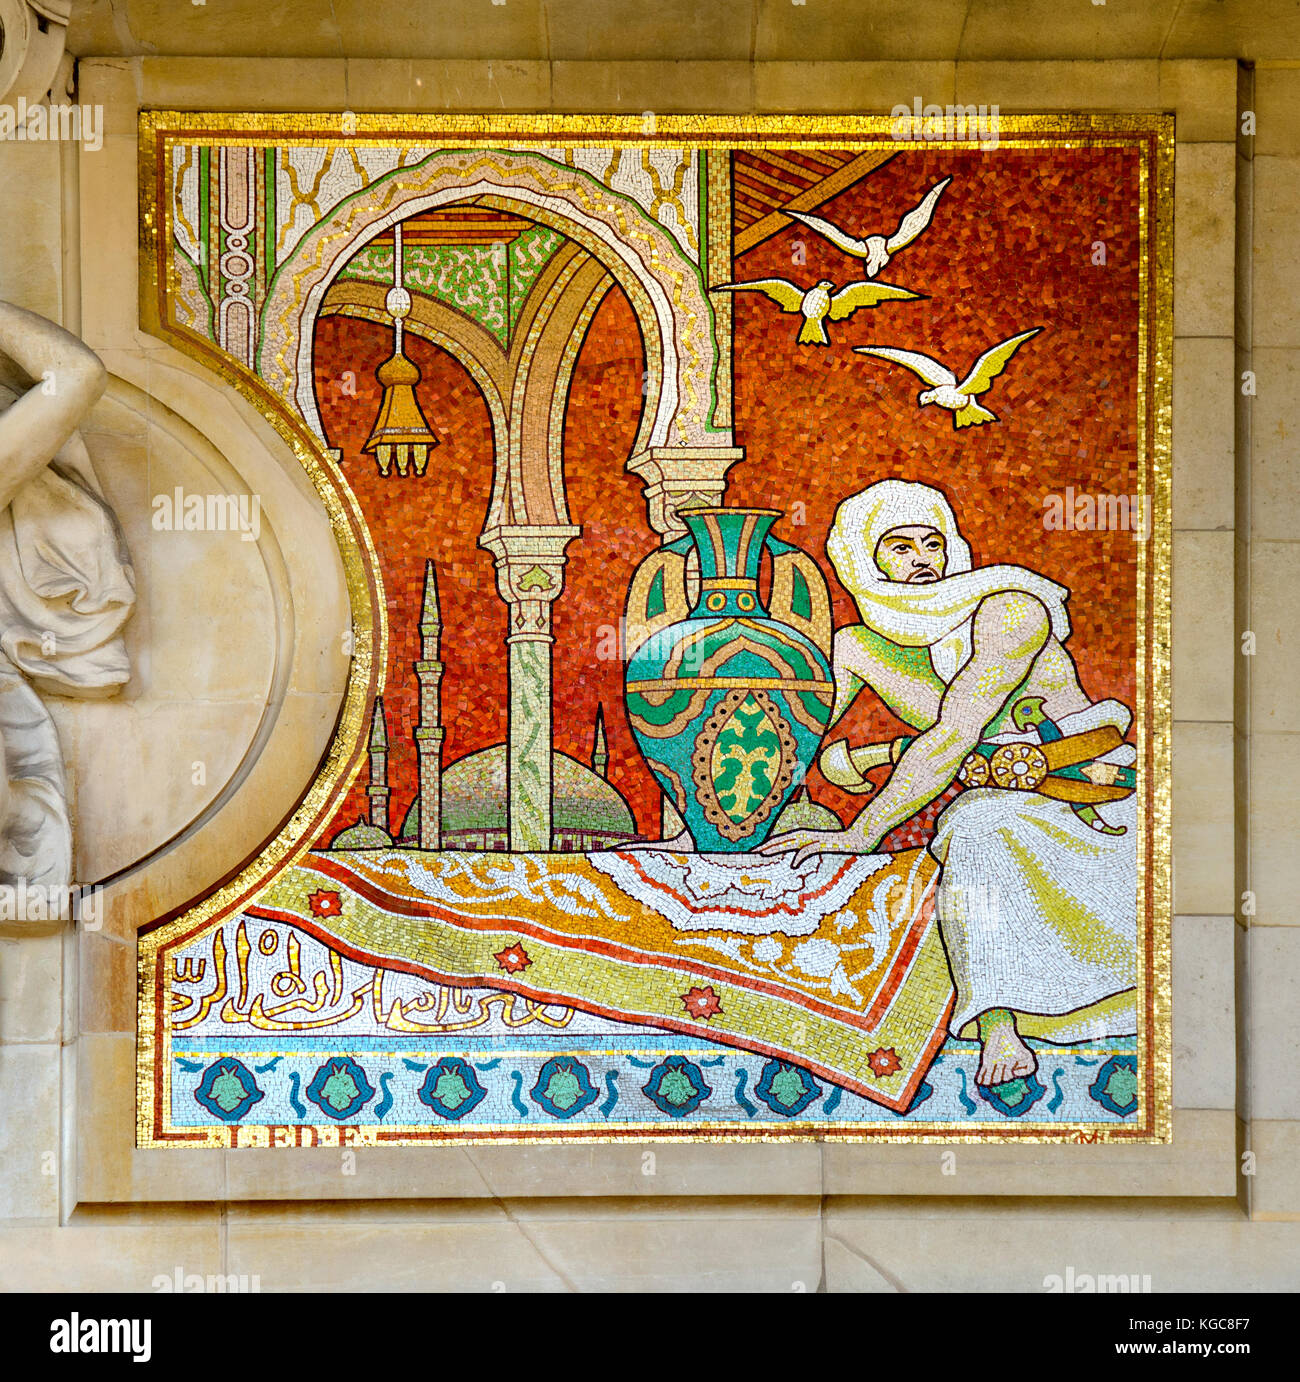 Paris, France. Grand Palais (..des Champs-Élysées): mosaic frieze on the facade (based on drawings by Louis Édouard Fournier) persian / Arabic art Stock Photo